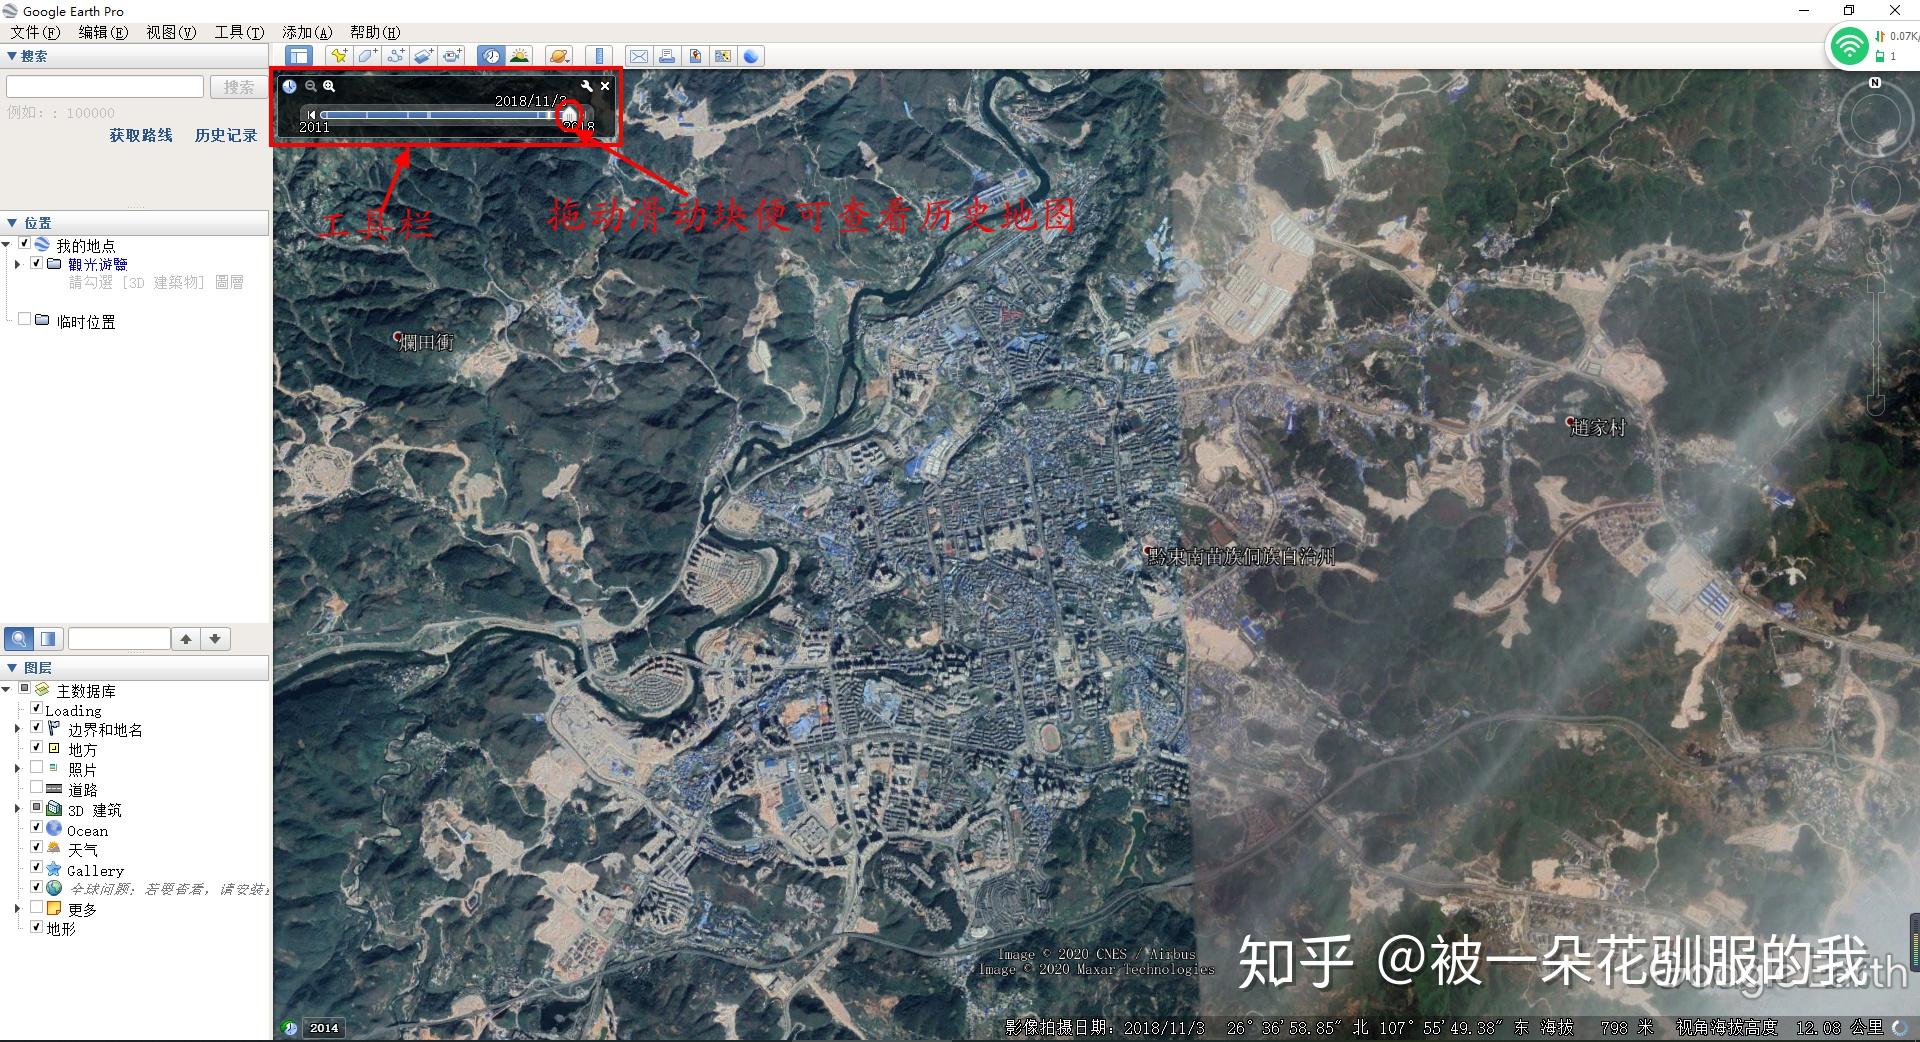 太谷县地图|太谷县地图全图高清版大图片|旅途风景图片网|www.visacits.com